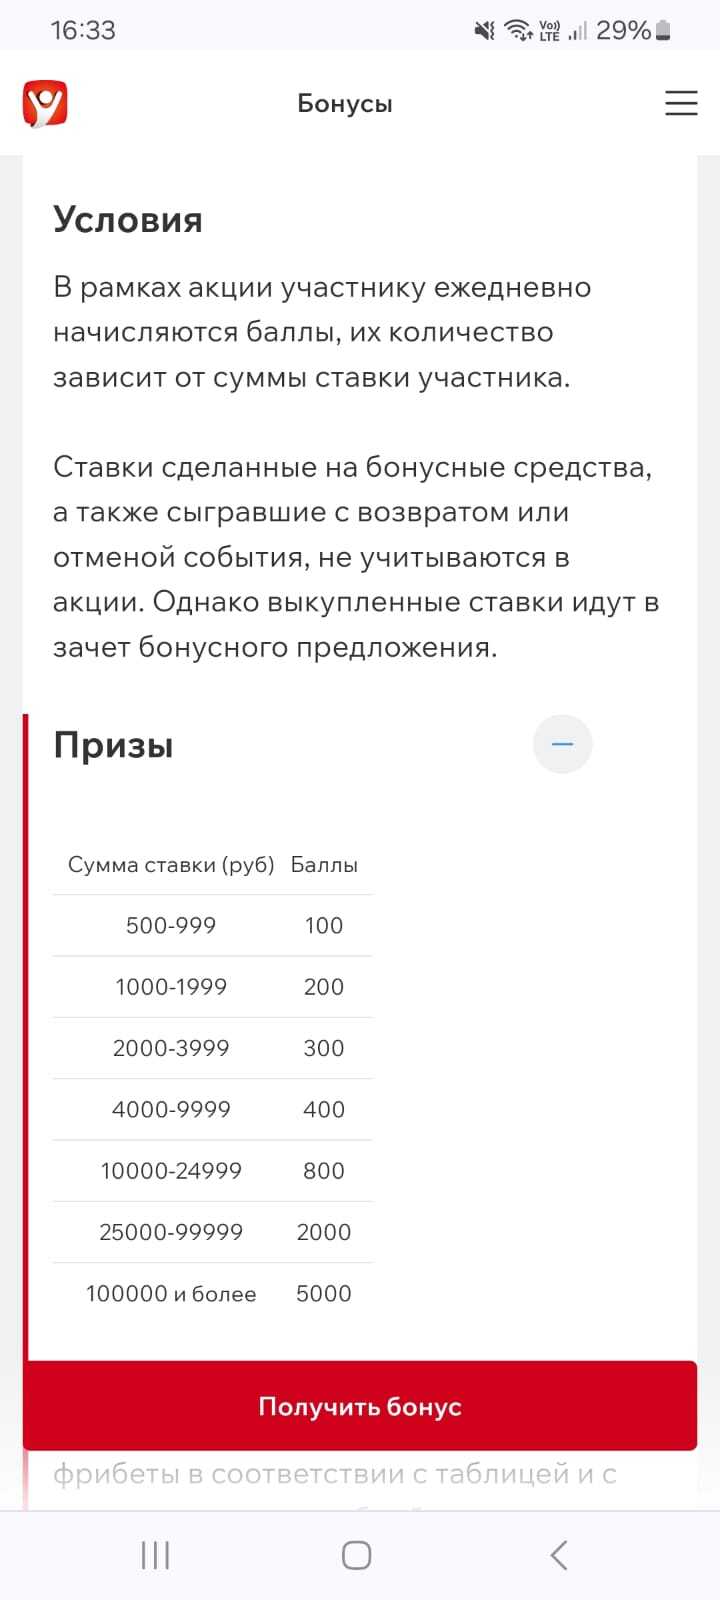 Фрибет до 50 000 рублей за ставки на футбол или киберфутбол в БК «Фонбет»